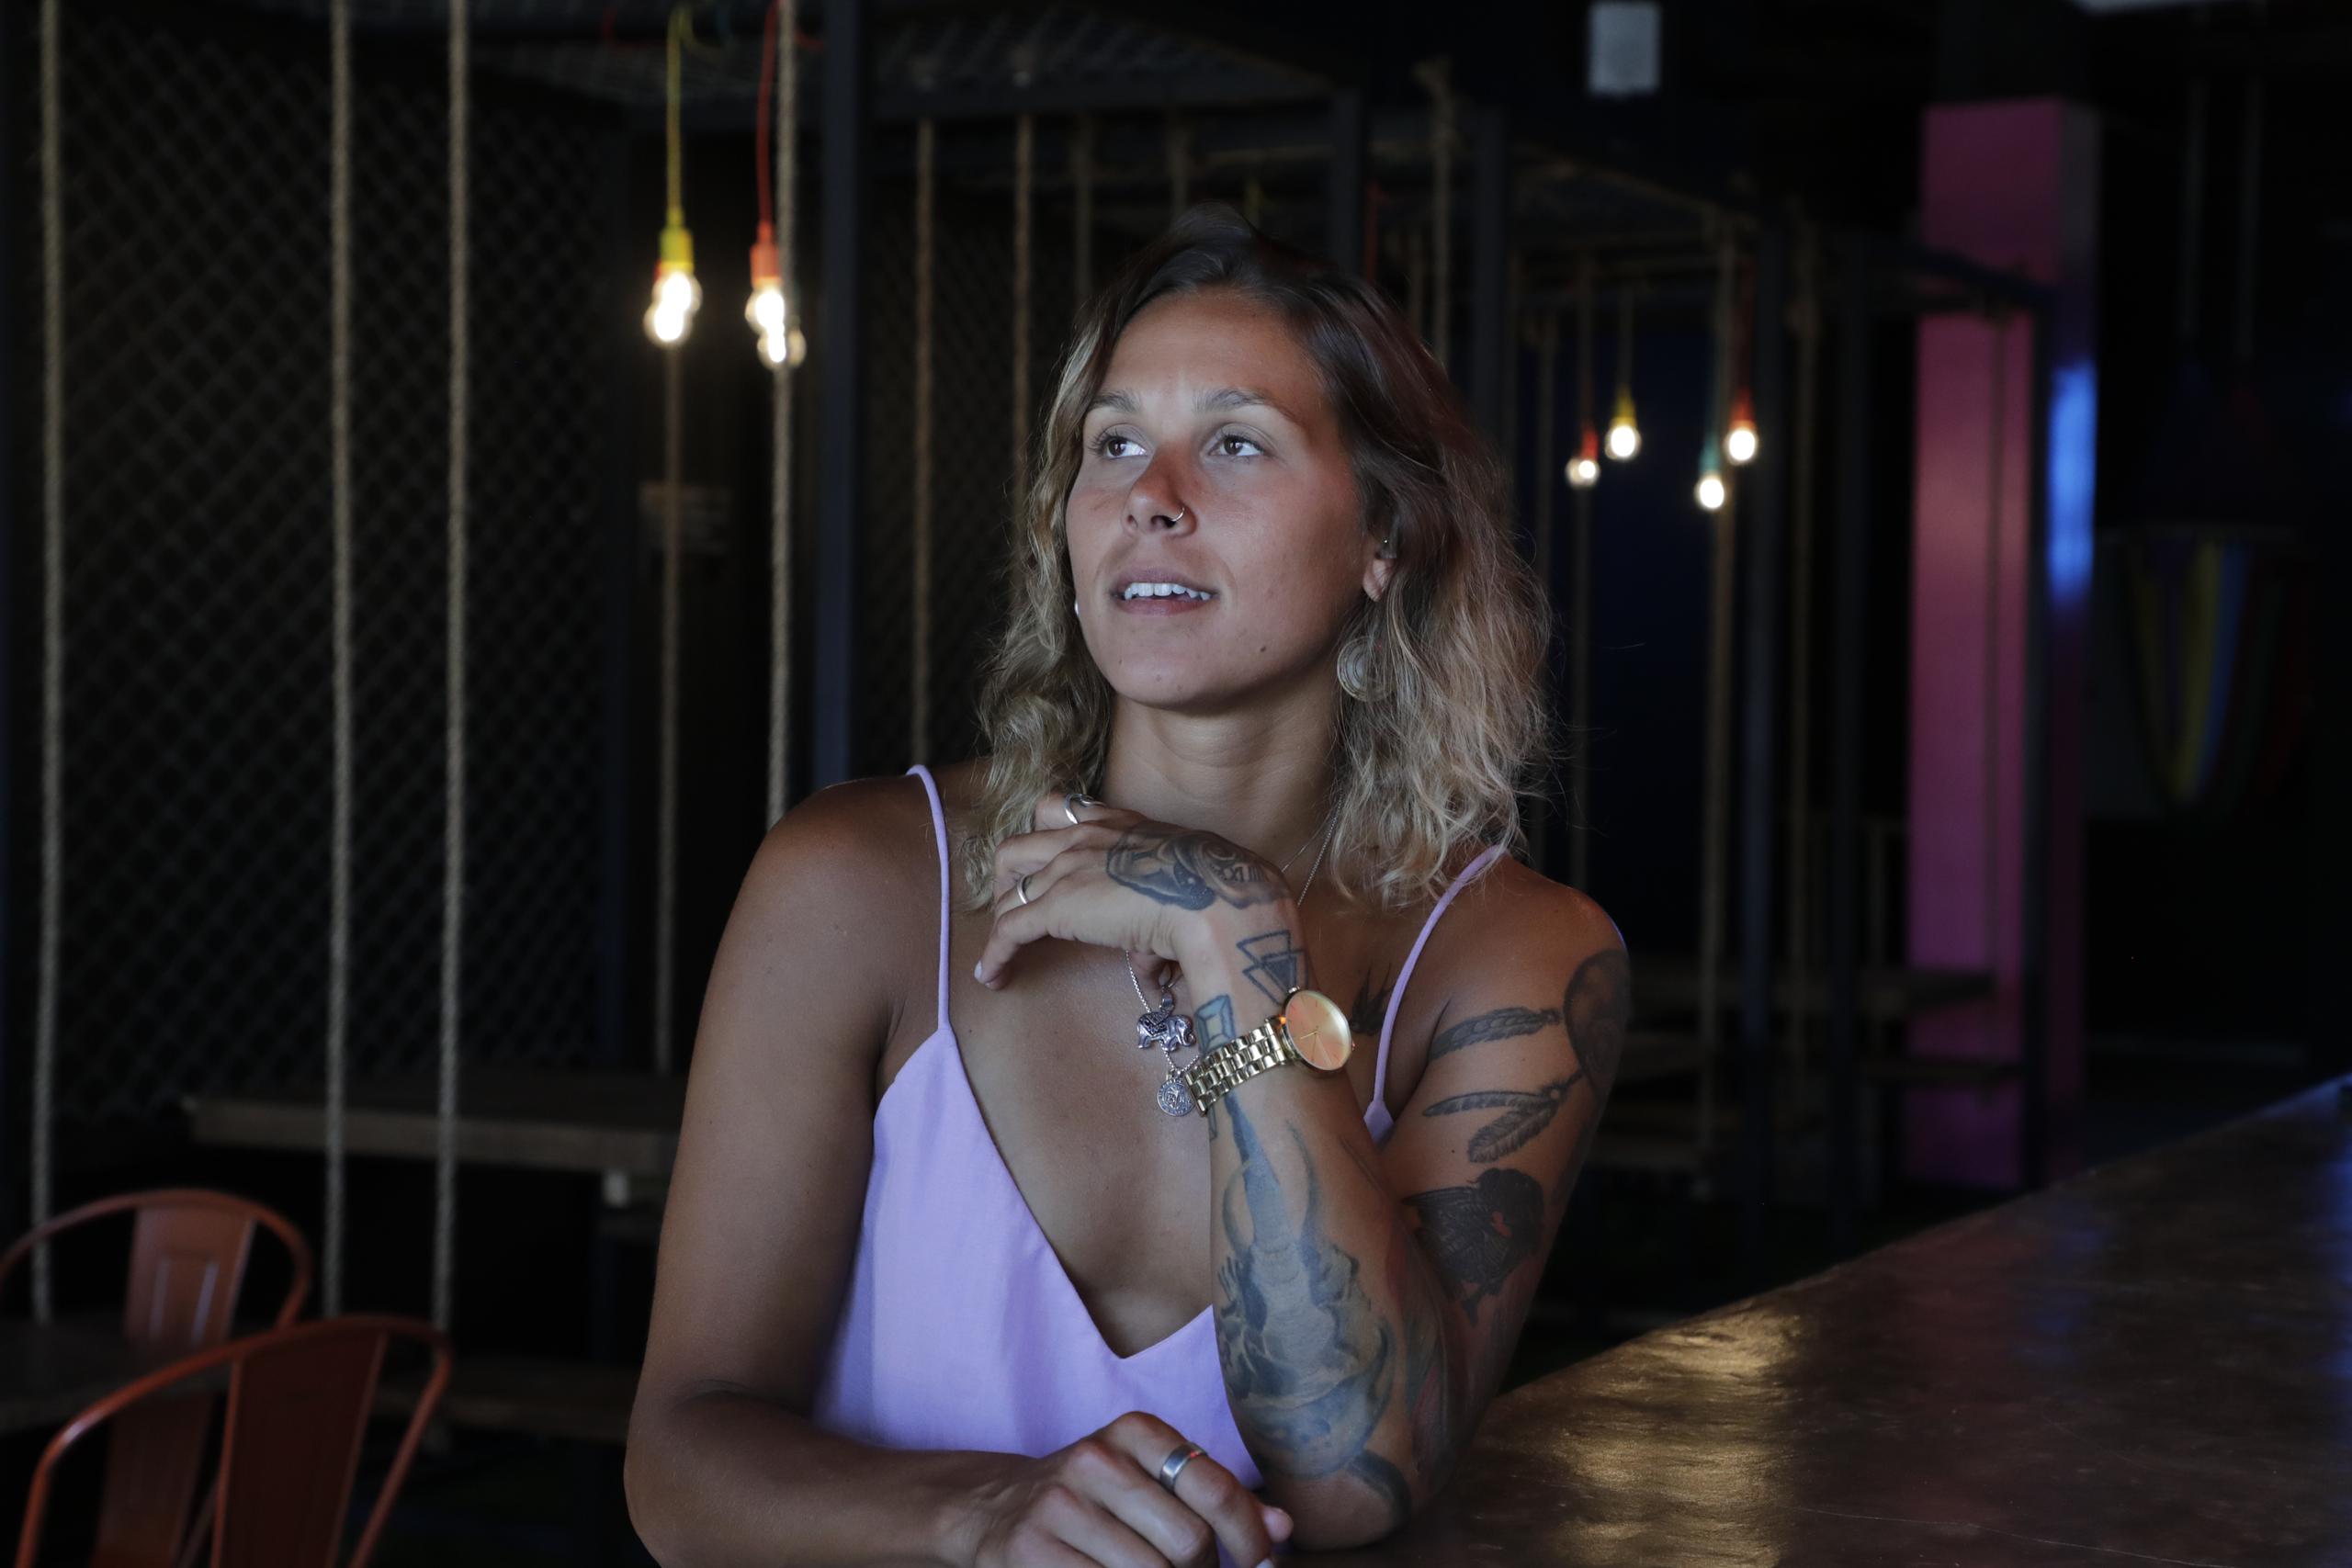 Stephanie Enright seguirá este septiembre activa como voleibolista a nivel internacional y, mientras, aprende sobre el negocio de restaurantes.